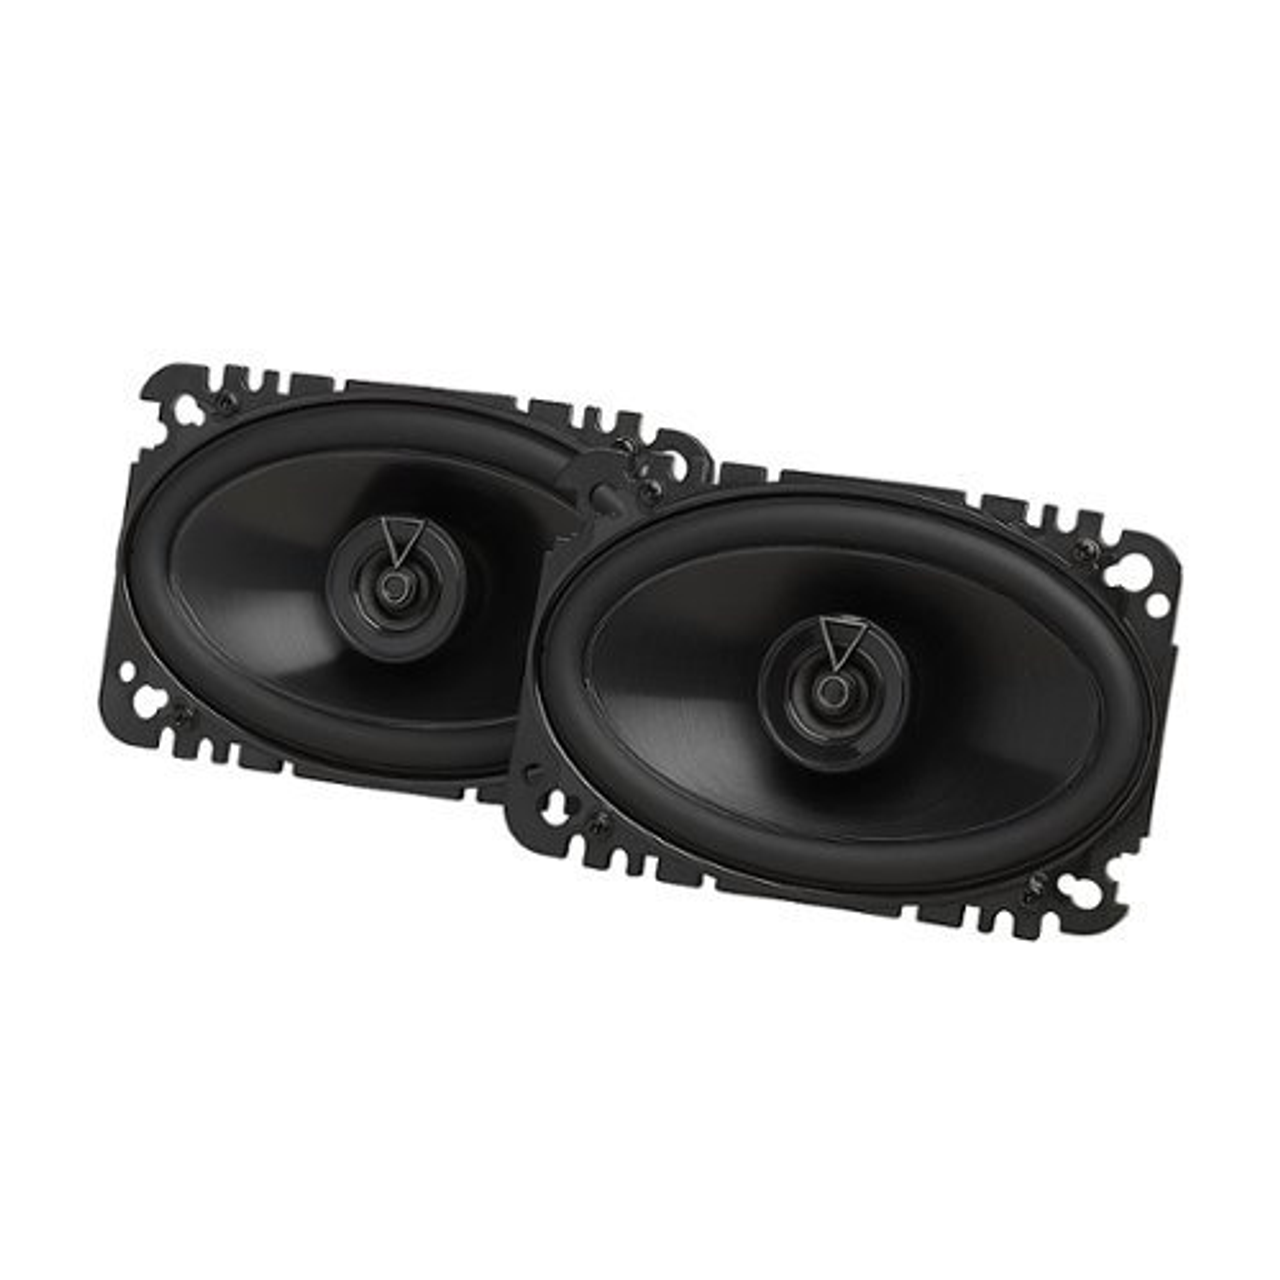 JBL - 4” X 6” Two-way car audio speaker no grill - Black